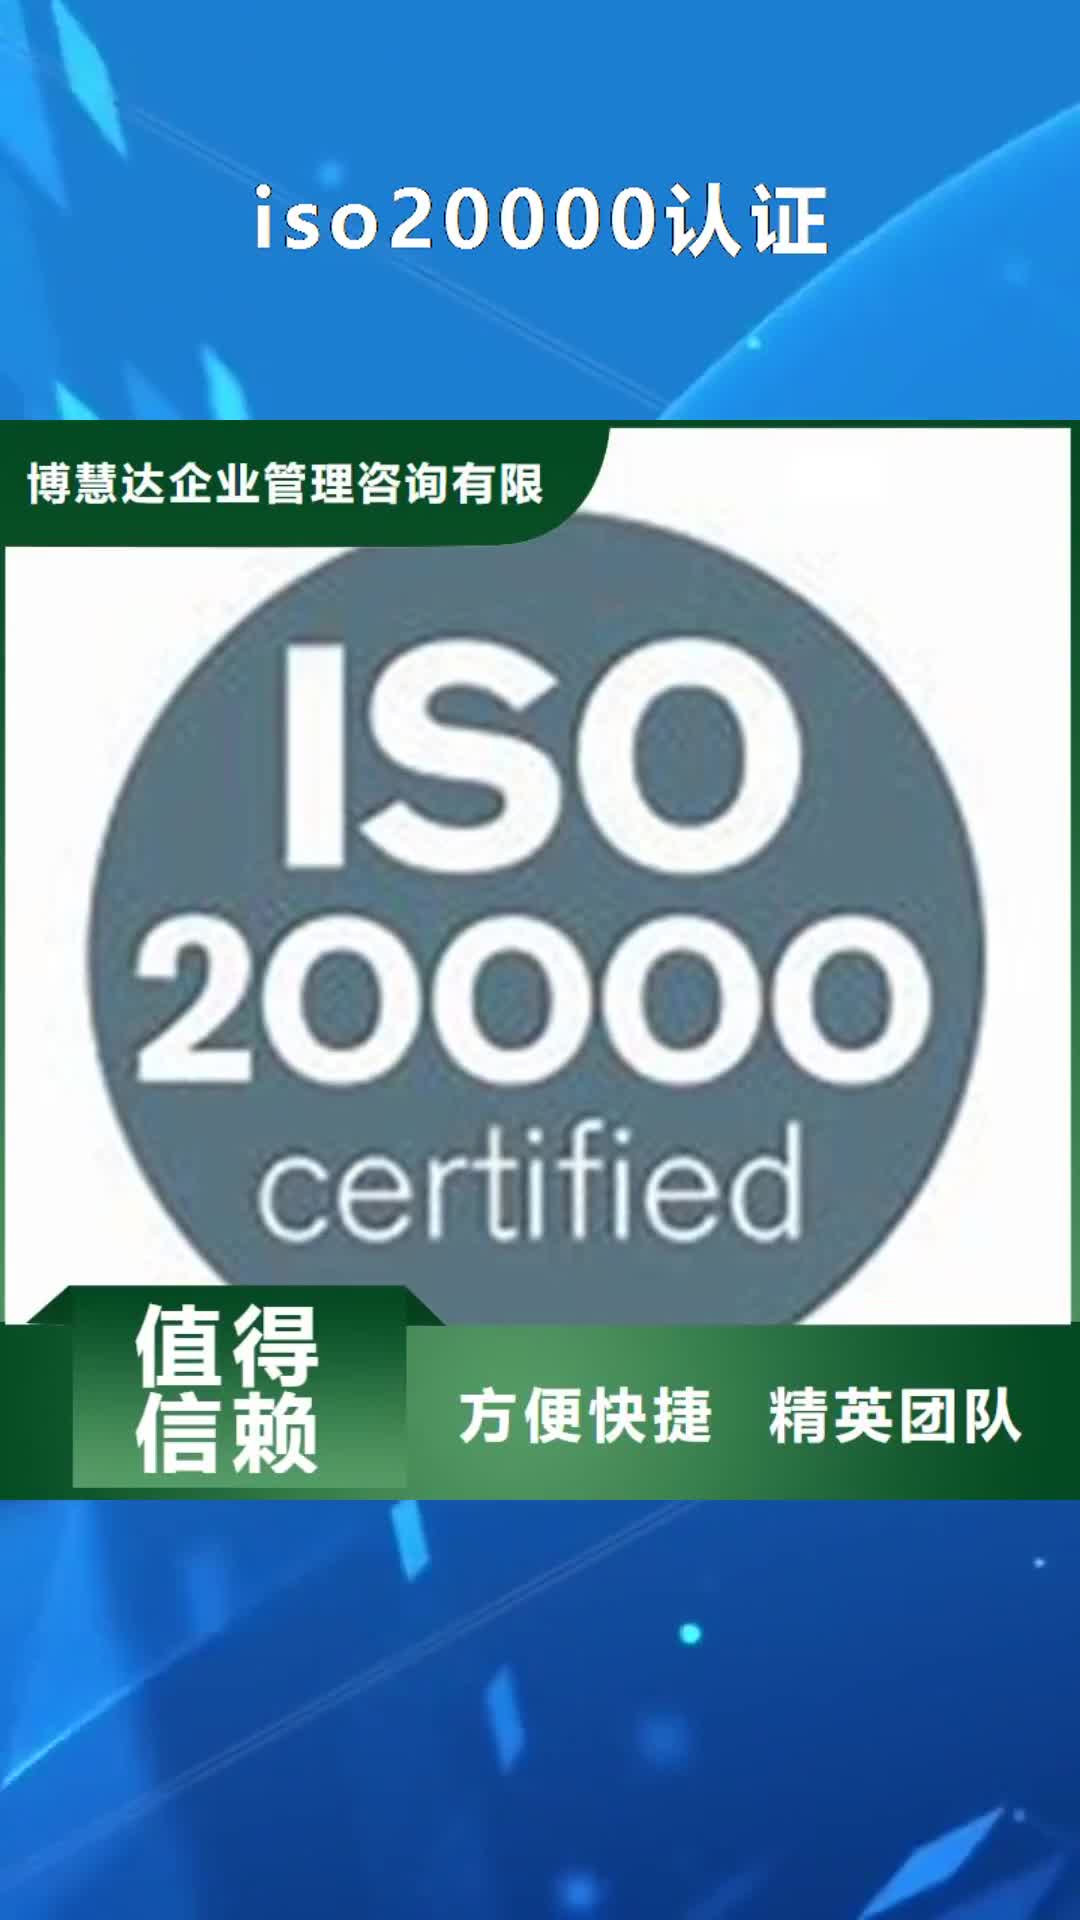 【银川 iso20000认证-HACCP认证高效】